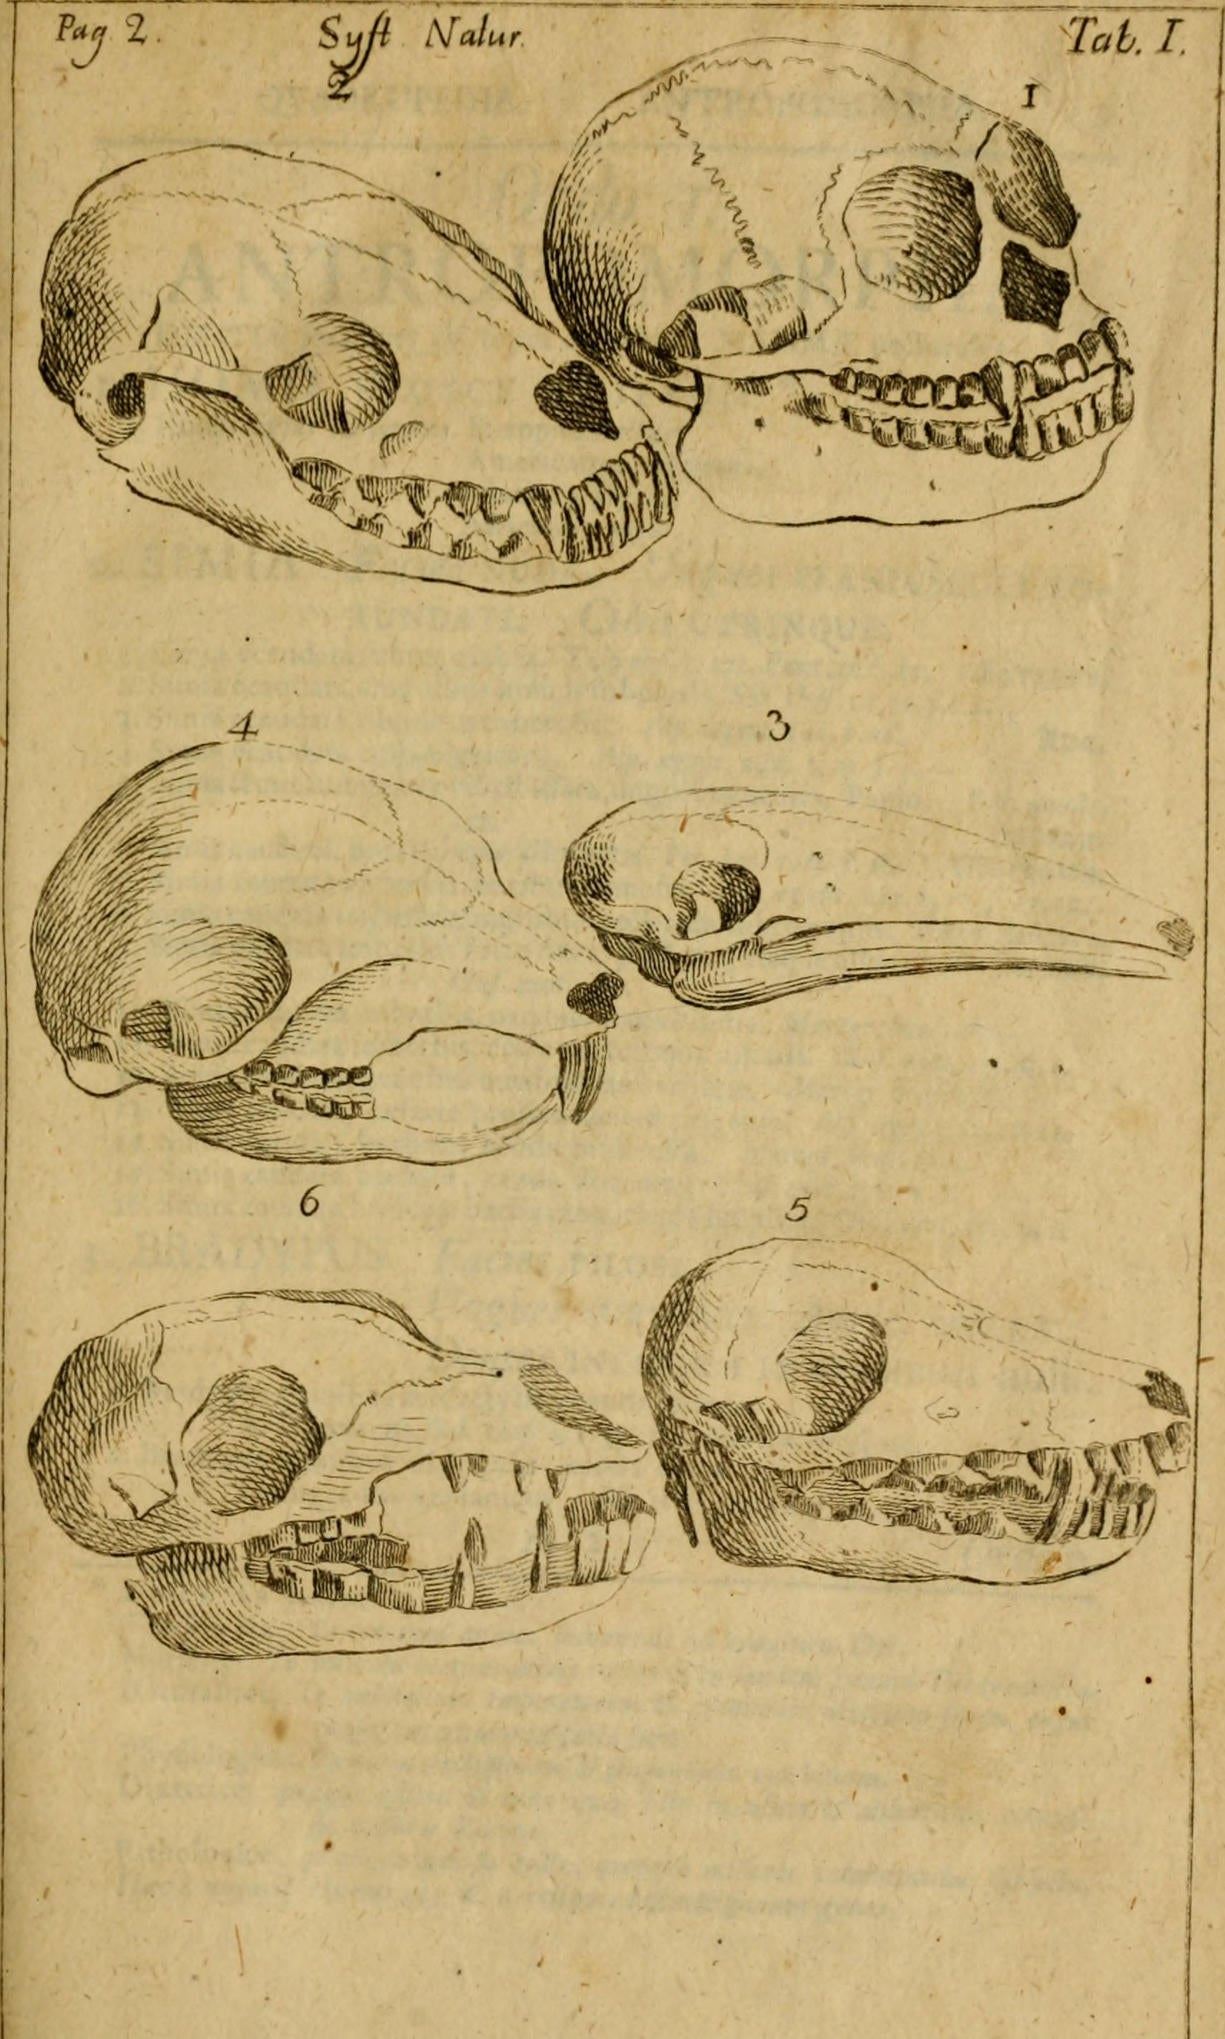 Human and animal skull drawings.